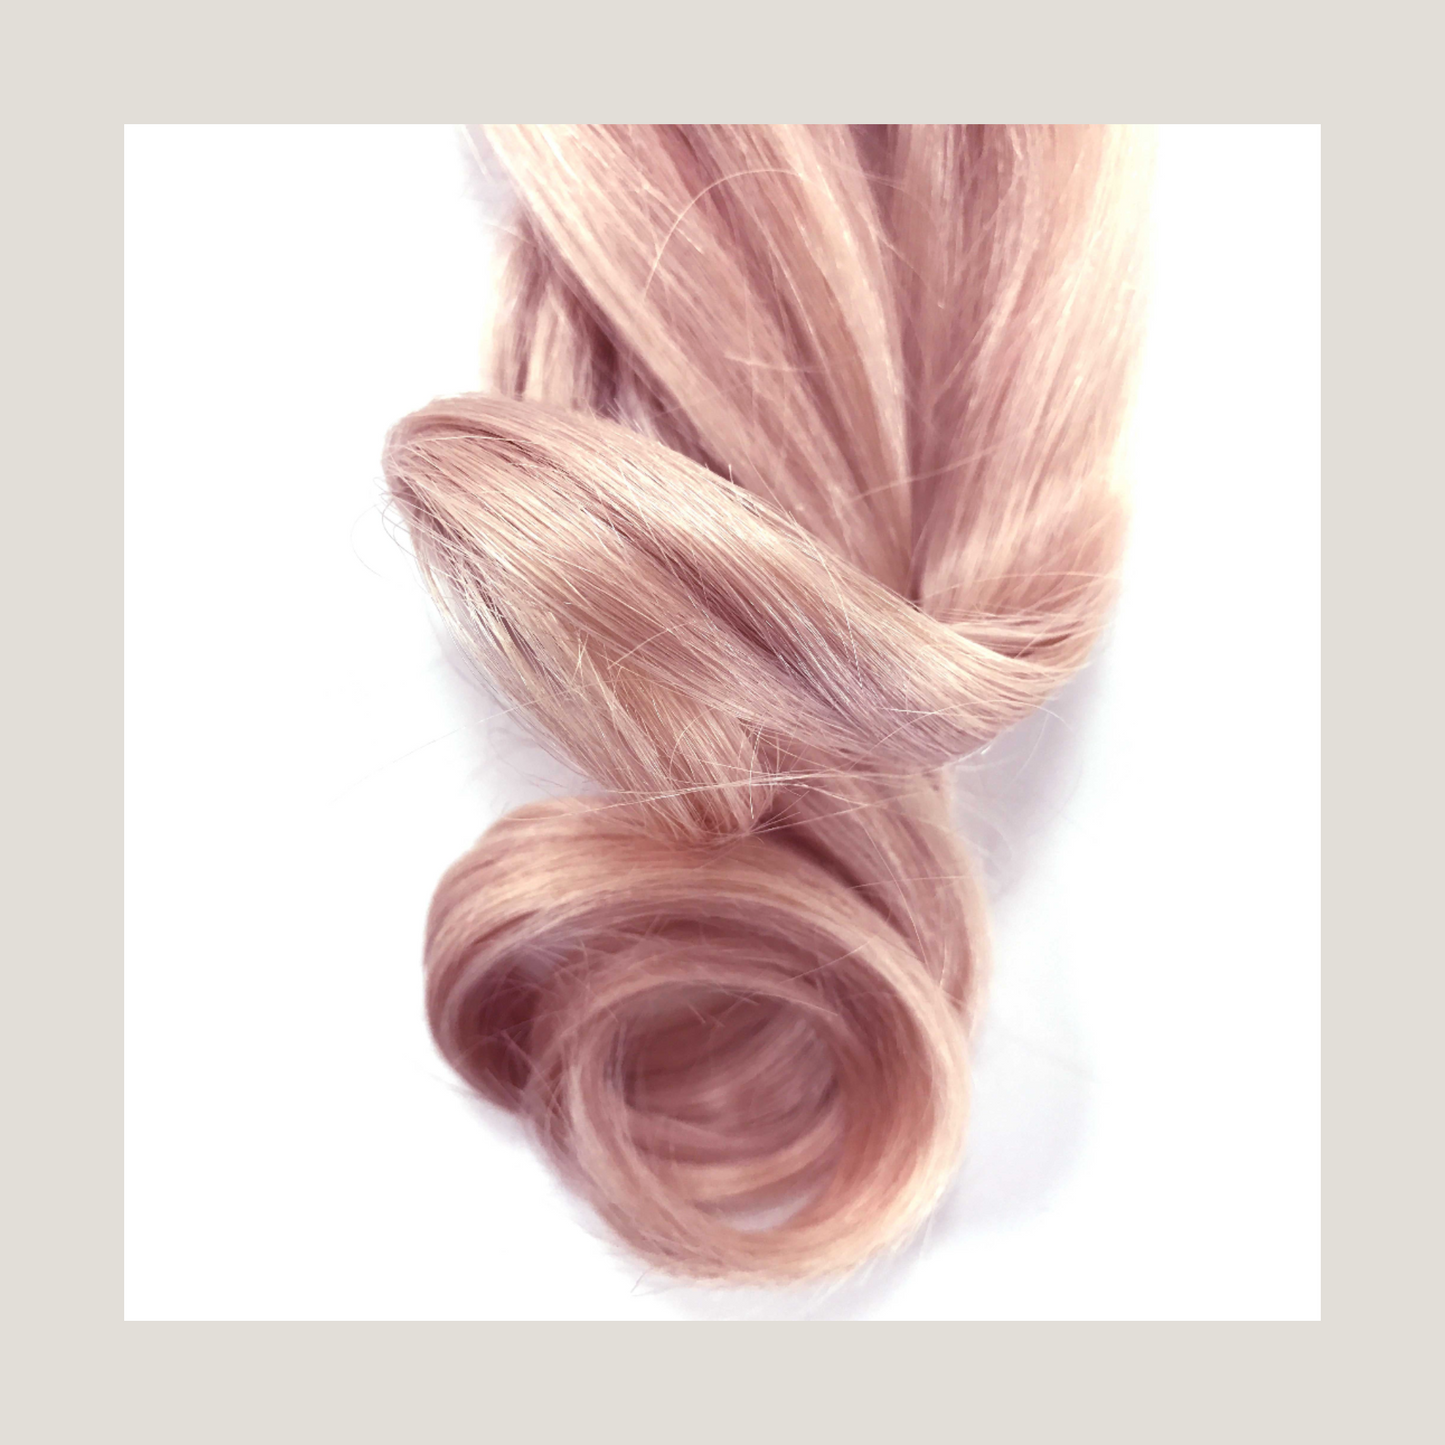 Extensions de cheveux couleur or rose, cheveux brésiliens et européens, balayage